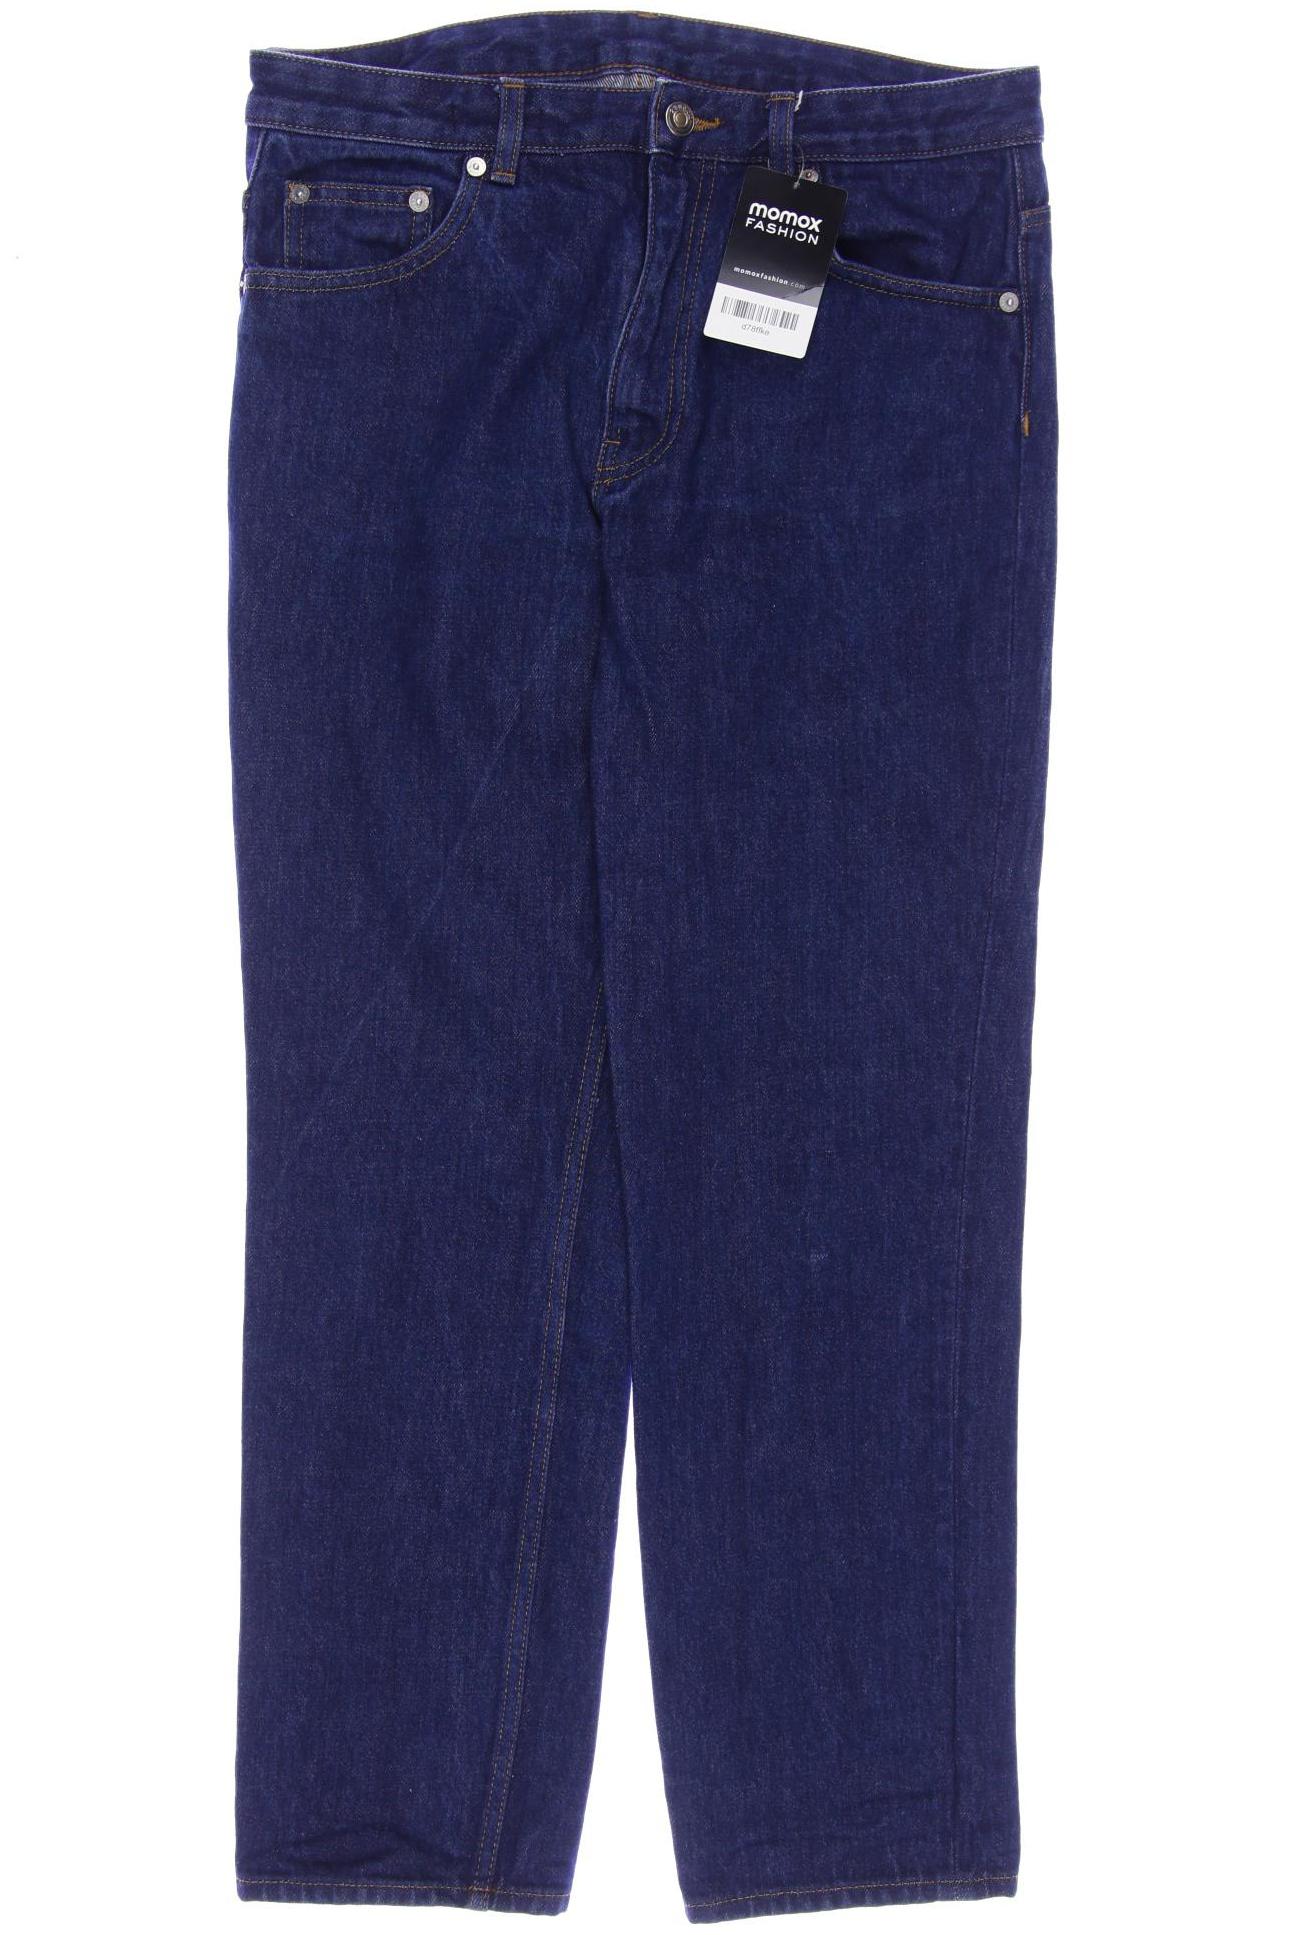 Arket Damen Jeans, marineblau von Arket